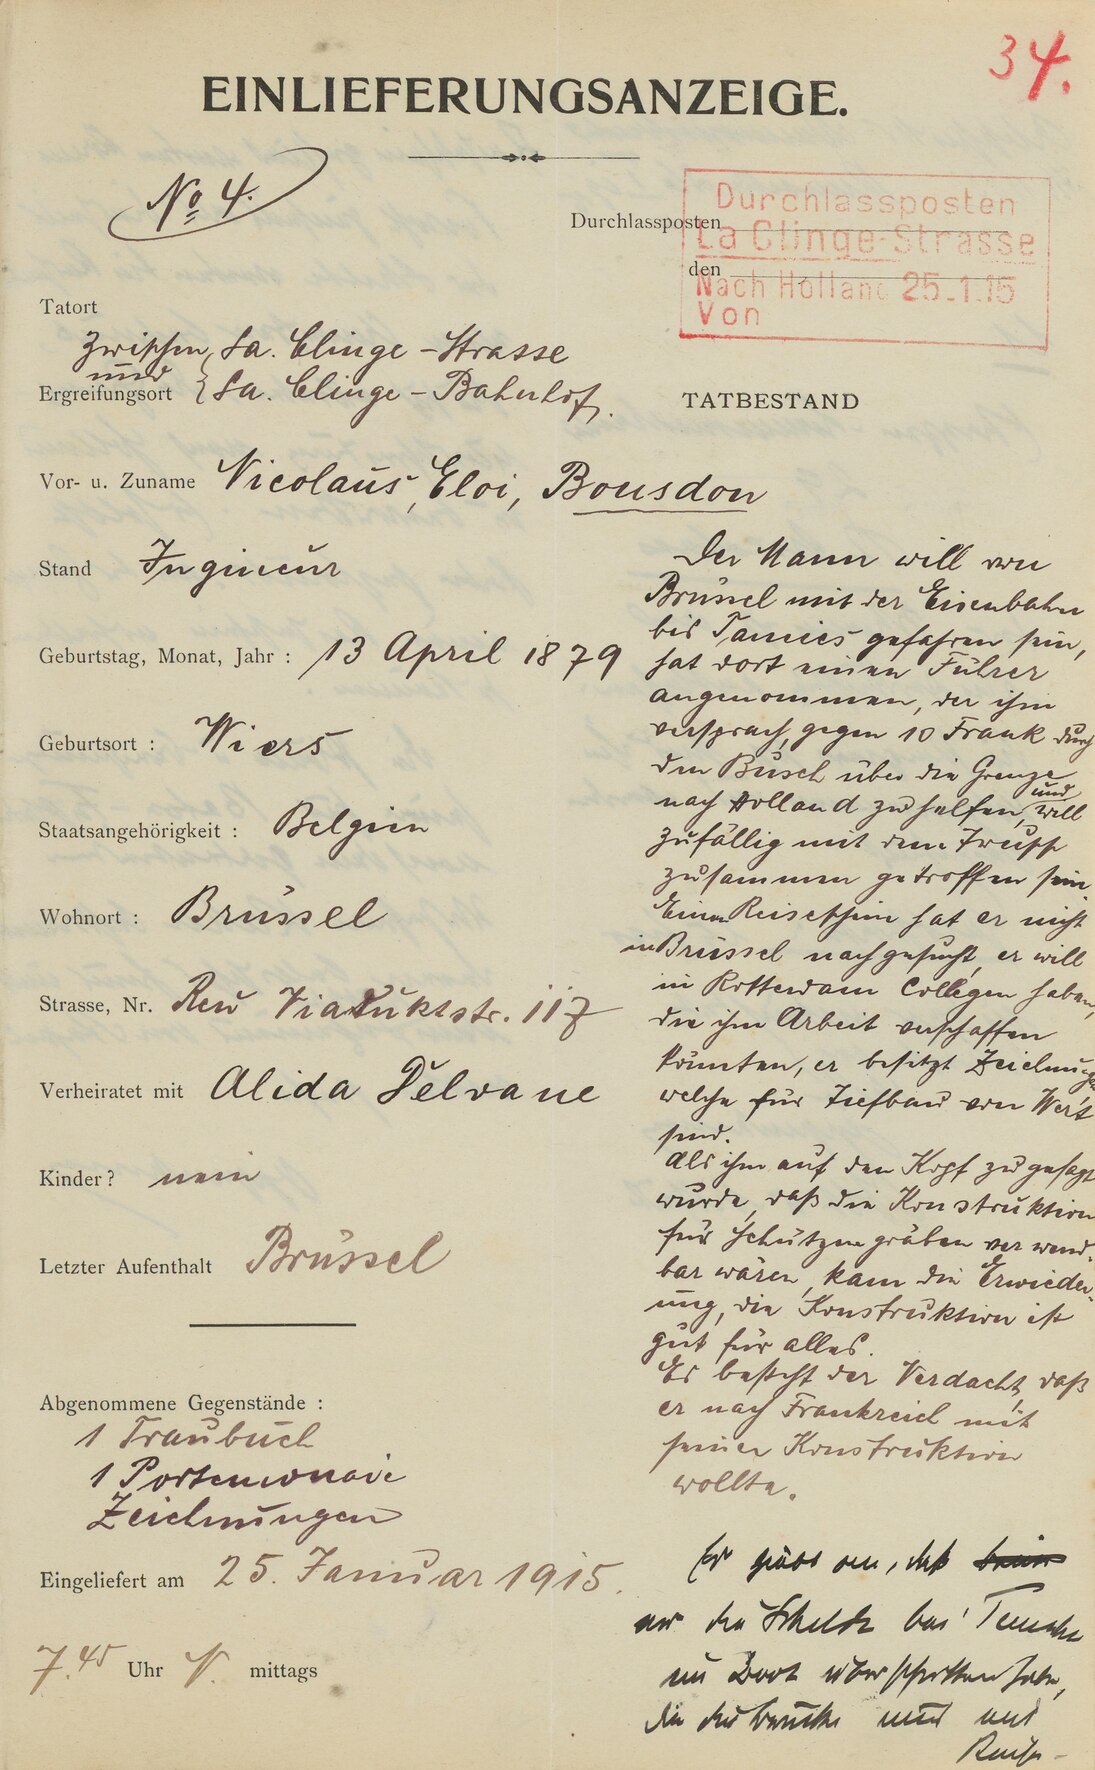 Einlieferungsanzeige eines beim illegalen Grenzübertritt aufgegriffenen belgischen Ingenieurs, Januar 1915